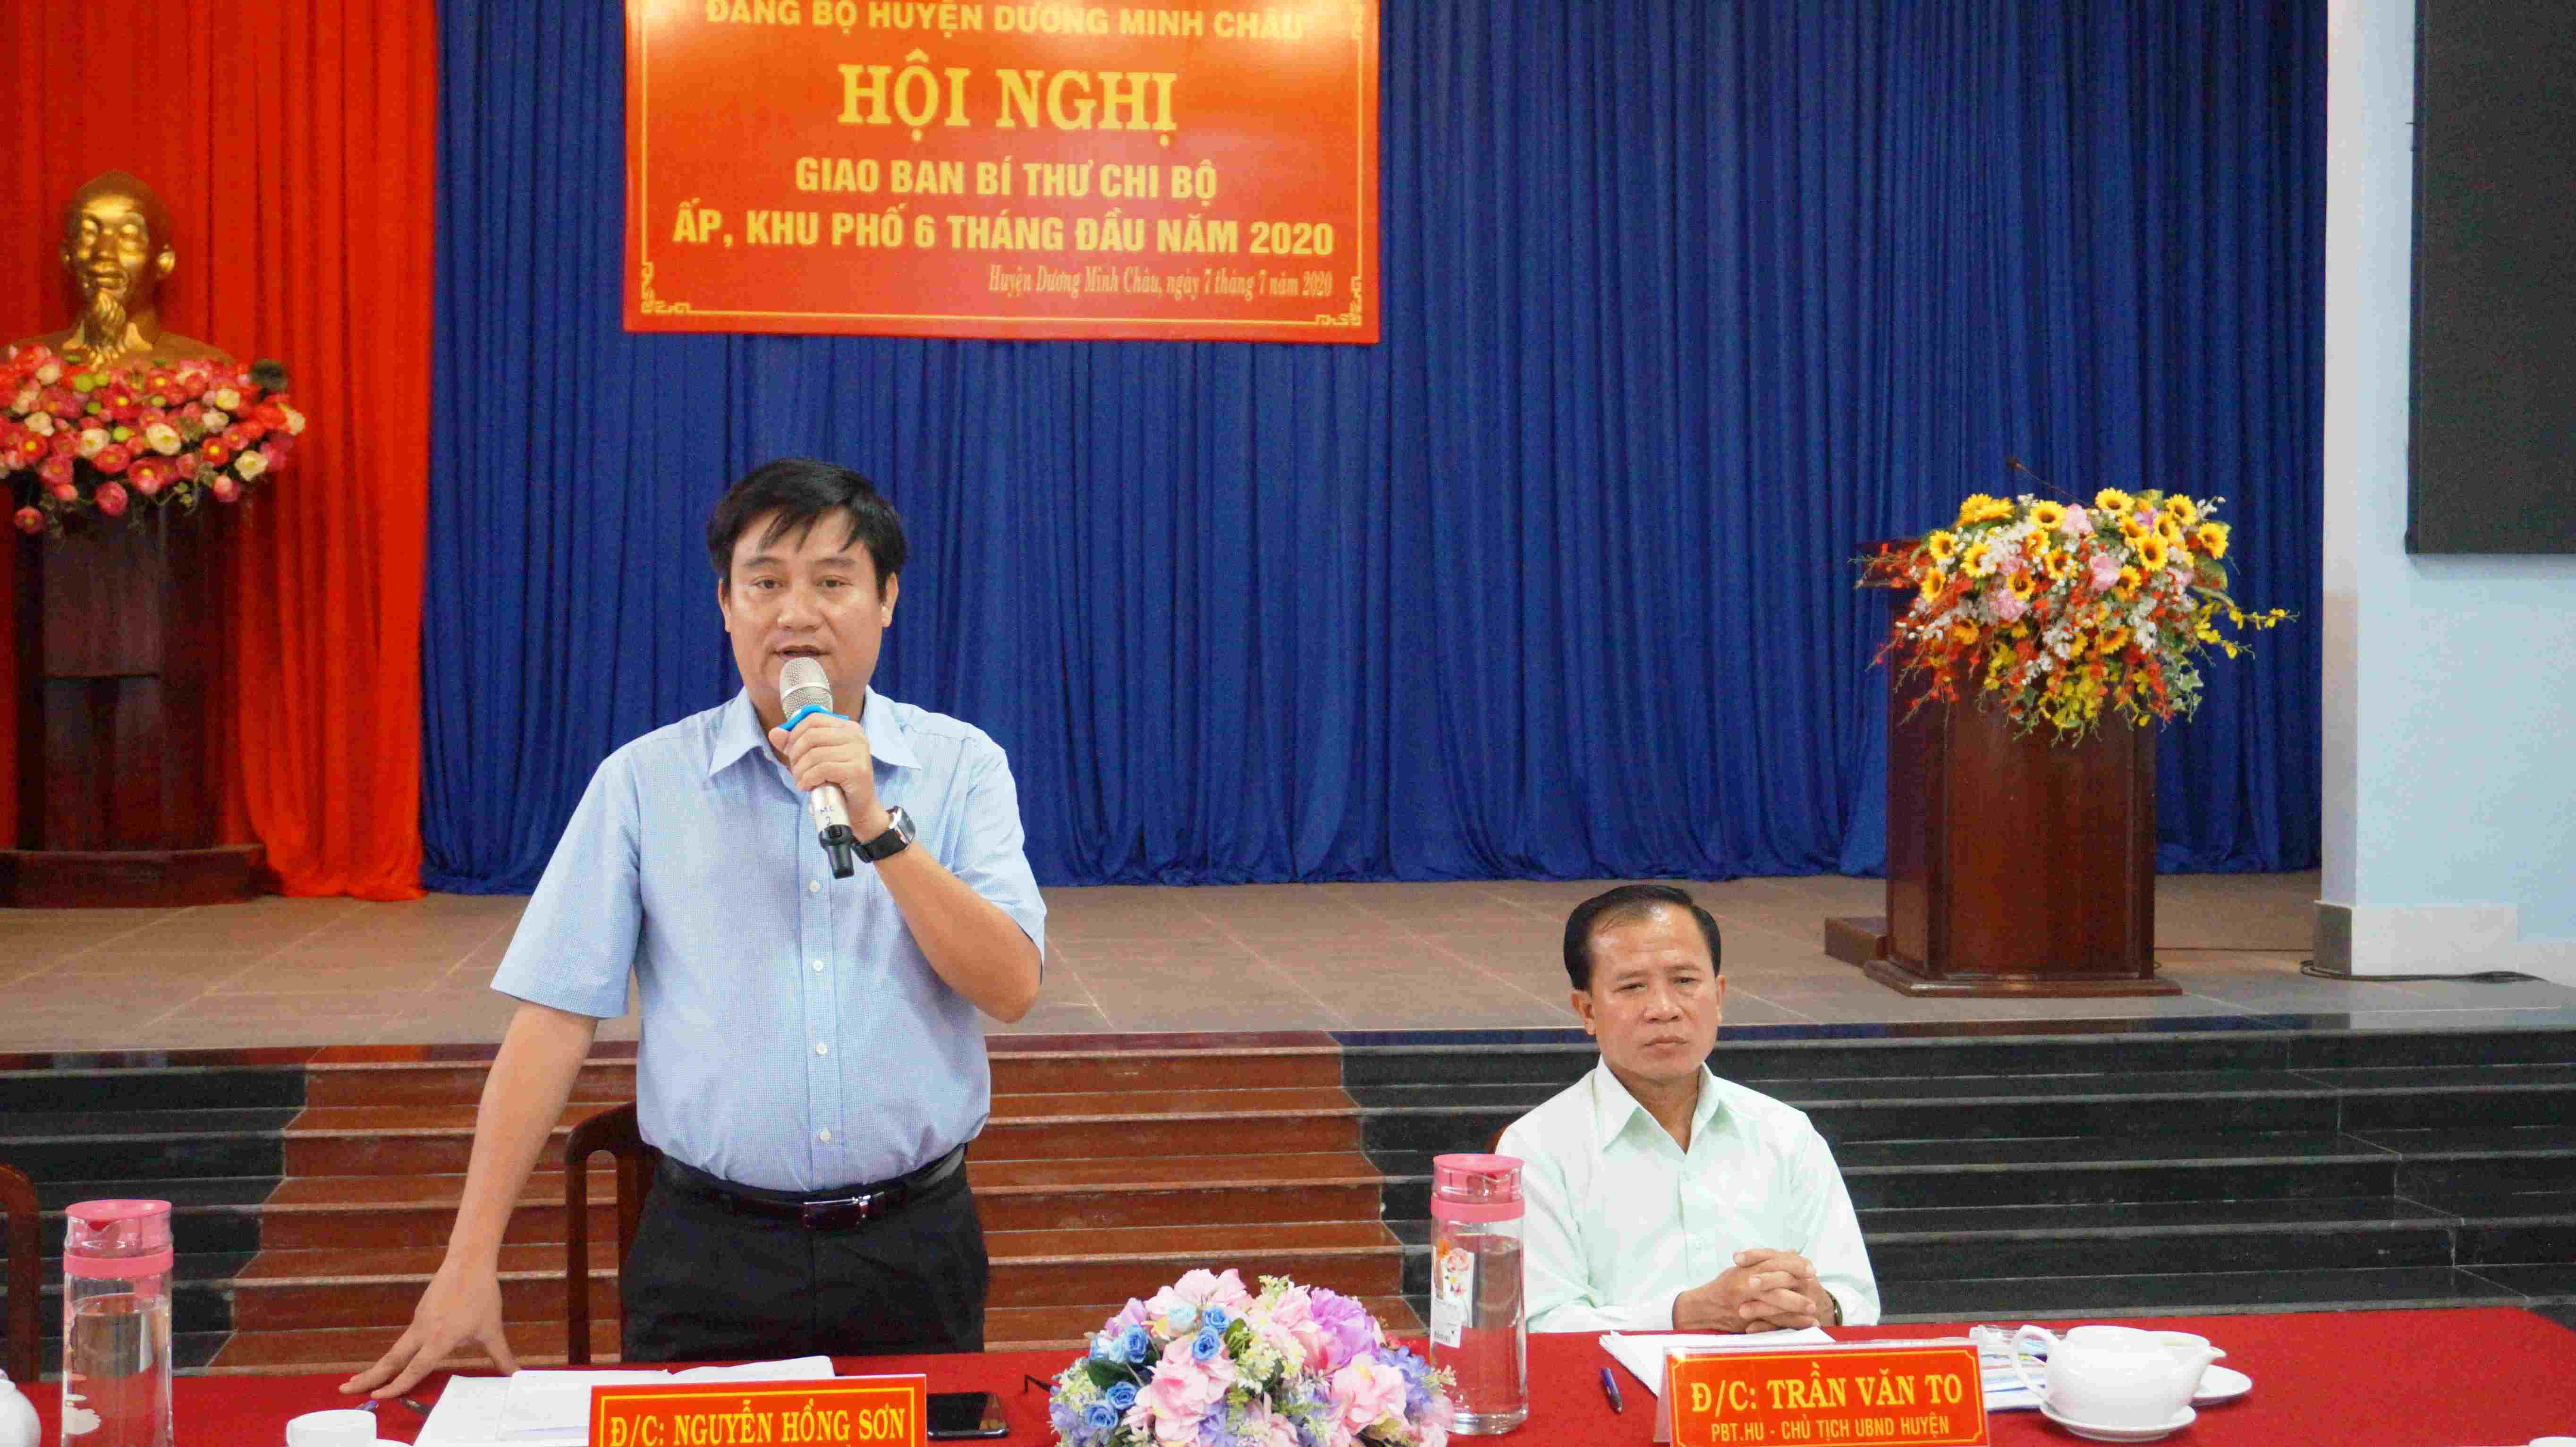 Huyện ủy Dương Minh Châu: Tổ chức giao ban Bí thư Chi bộ ấp, khu phố 6 tháng đầu năm 2020